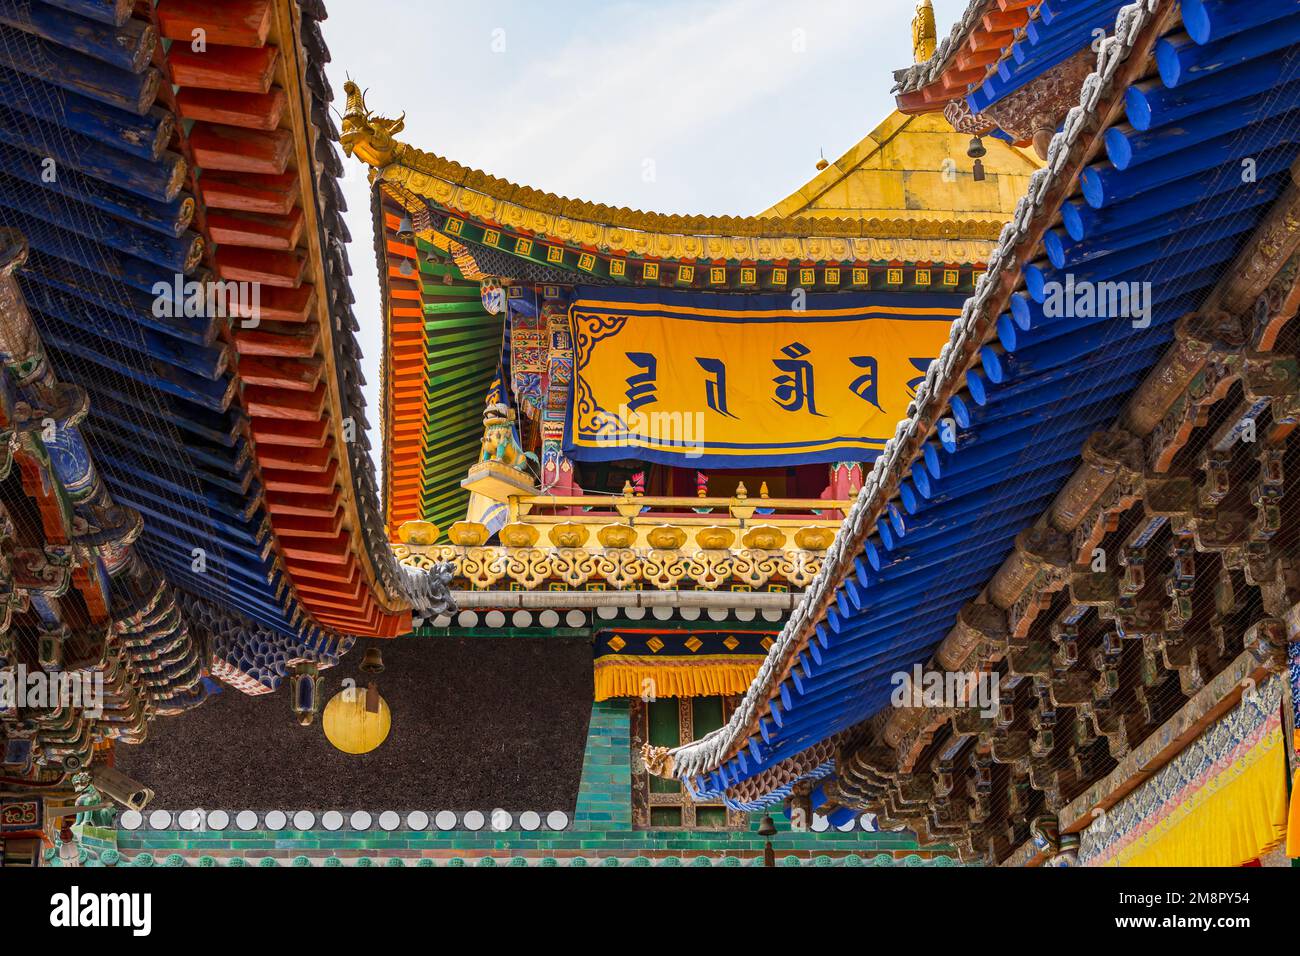 Farbenfrohe Dächer mit Balken und Ornamenten und spektakuläre Dekorationen in einem Tempel im Kumbum Jampaling Kloster, Xining, China Stockfoto